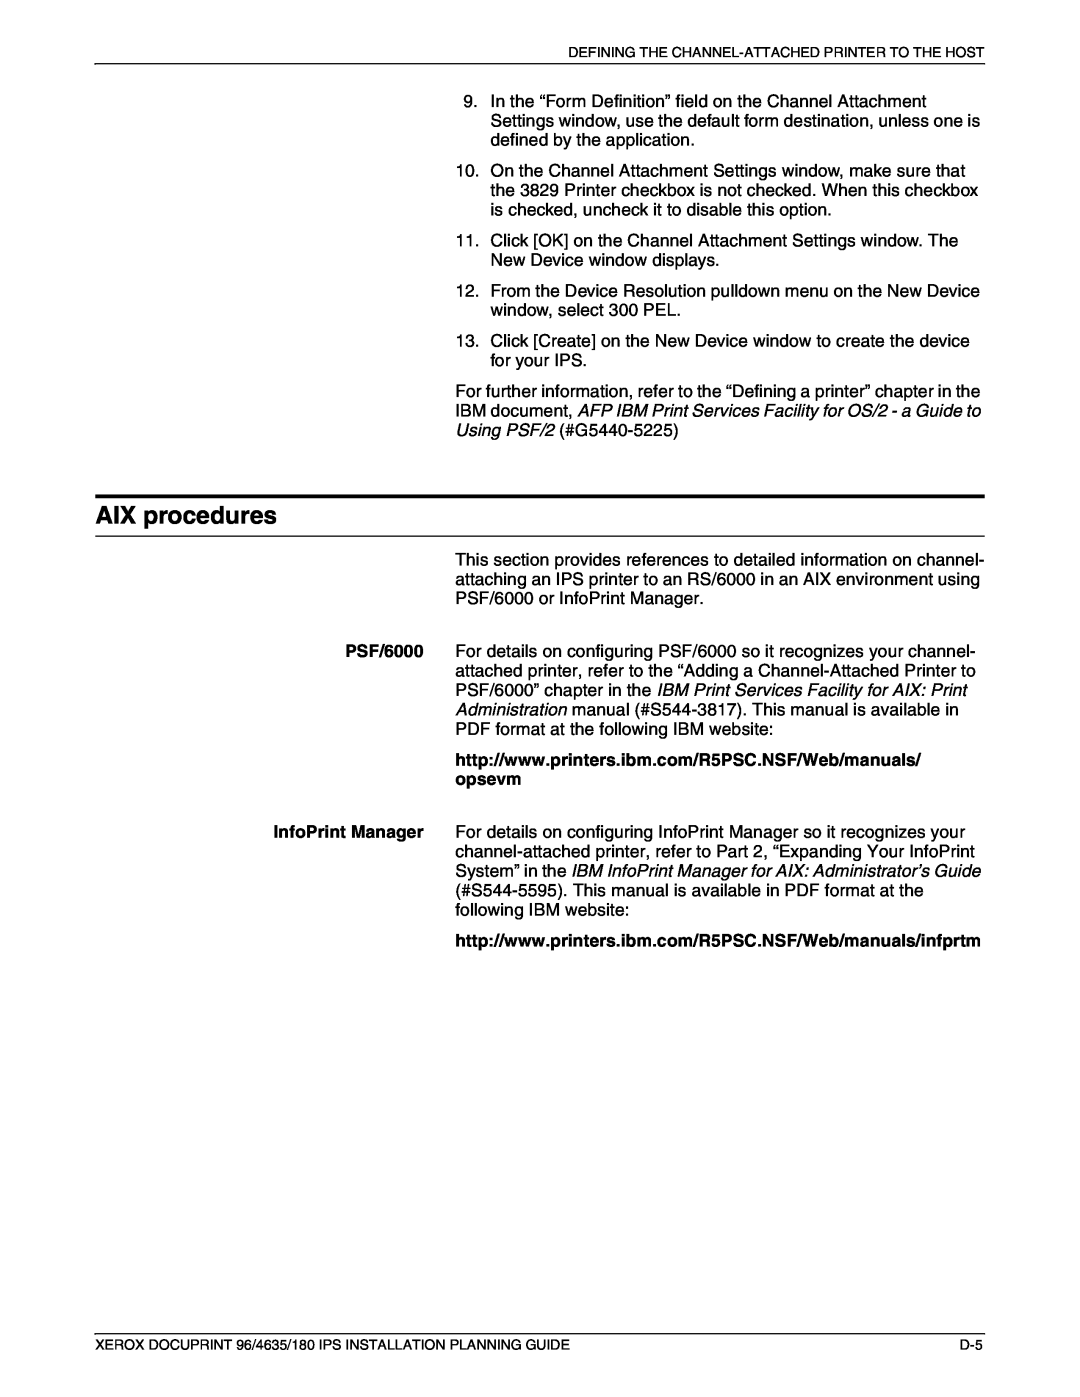 Xerox 180 IPS manual AIX procedures 